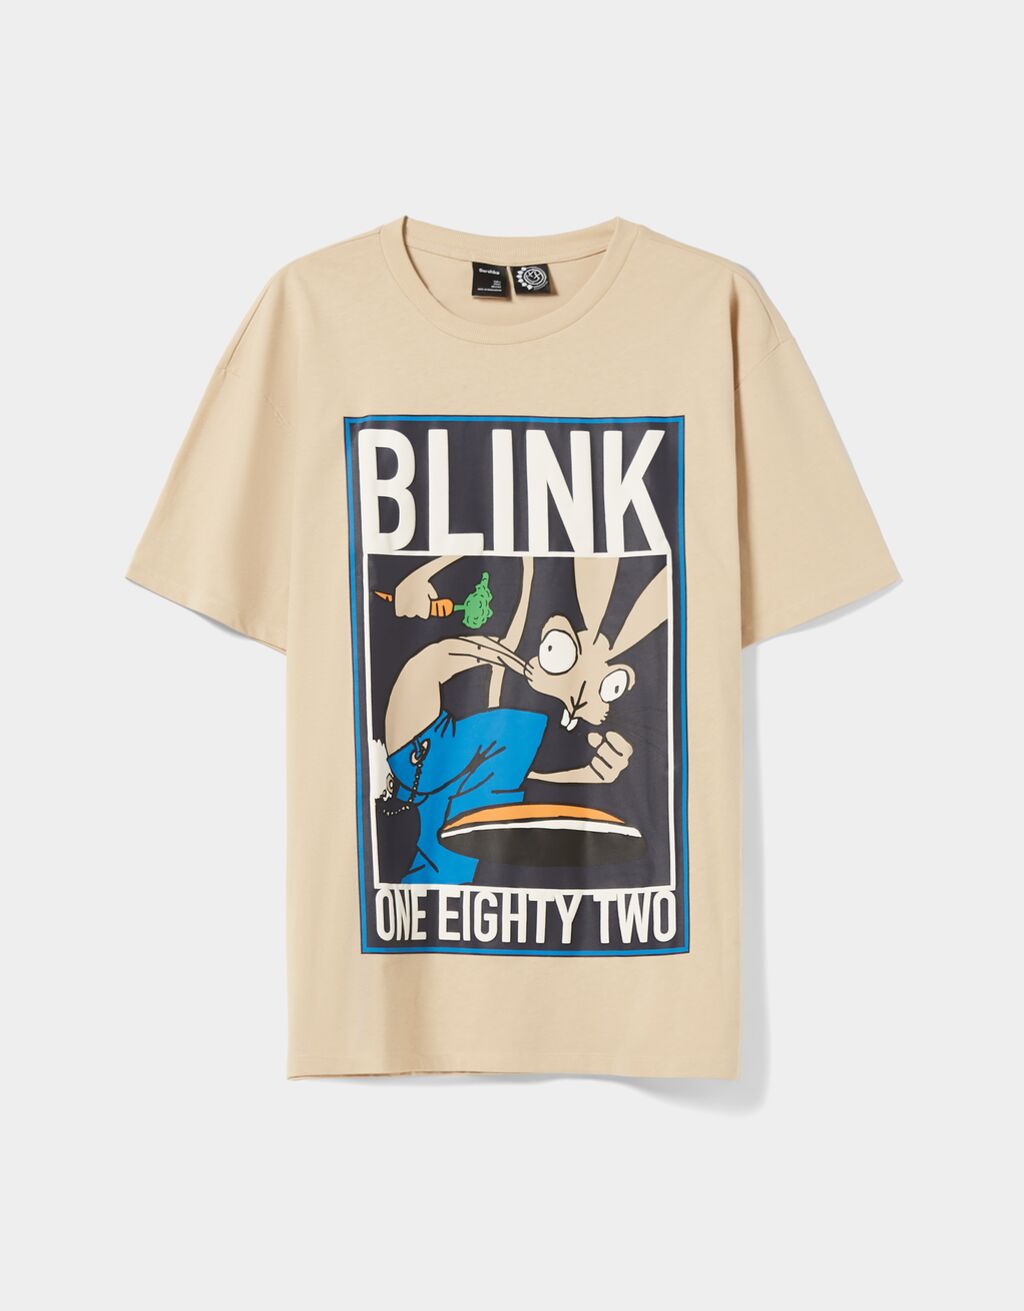 Padajoča majica s kratkimi rokavi in potiskom Blink 182